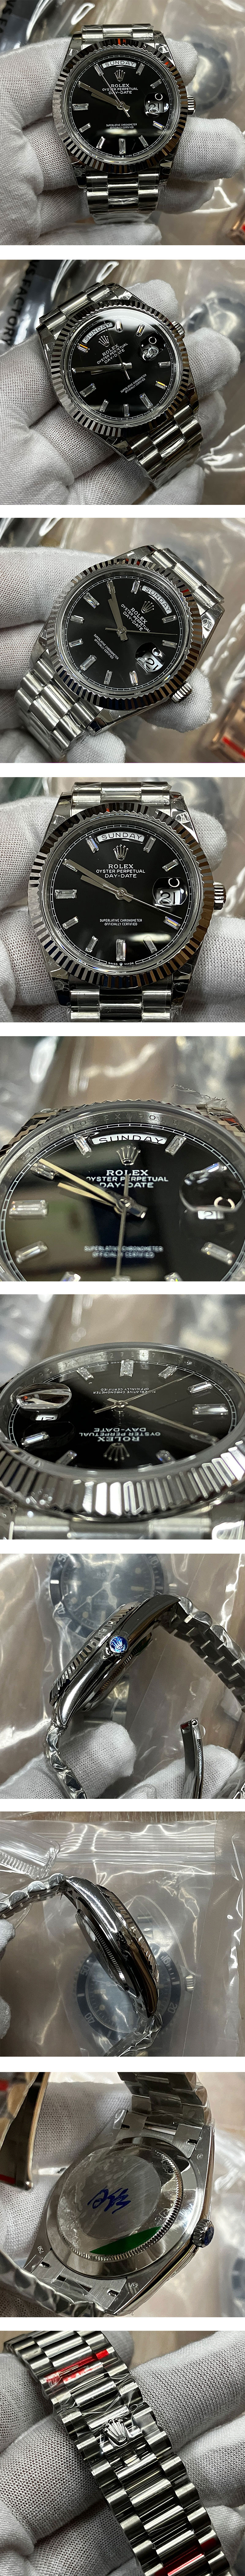 安心注文 ROLEX N級品スーパーコピー時計 デイデイトM228239-0005 ブラック 40mm 曜日表示 ブラック文字盤